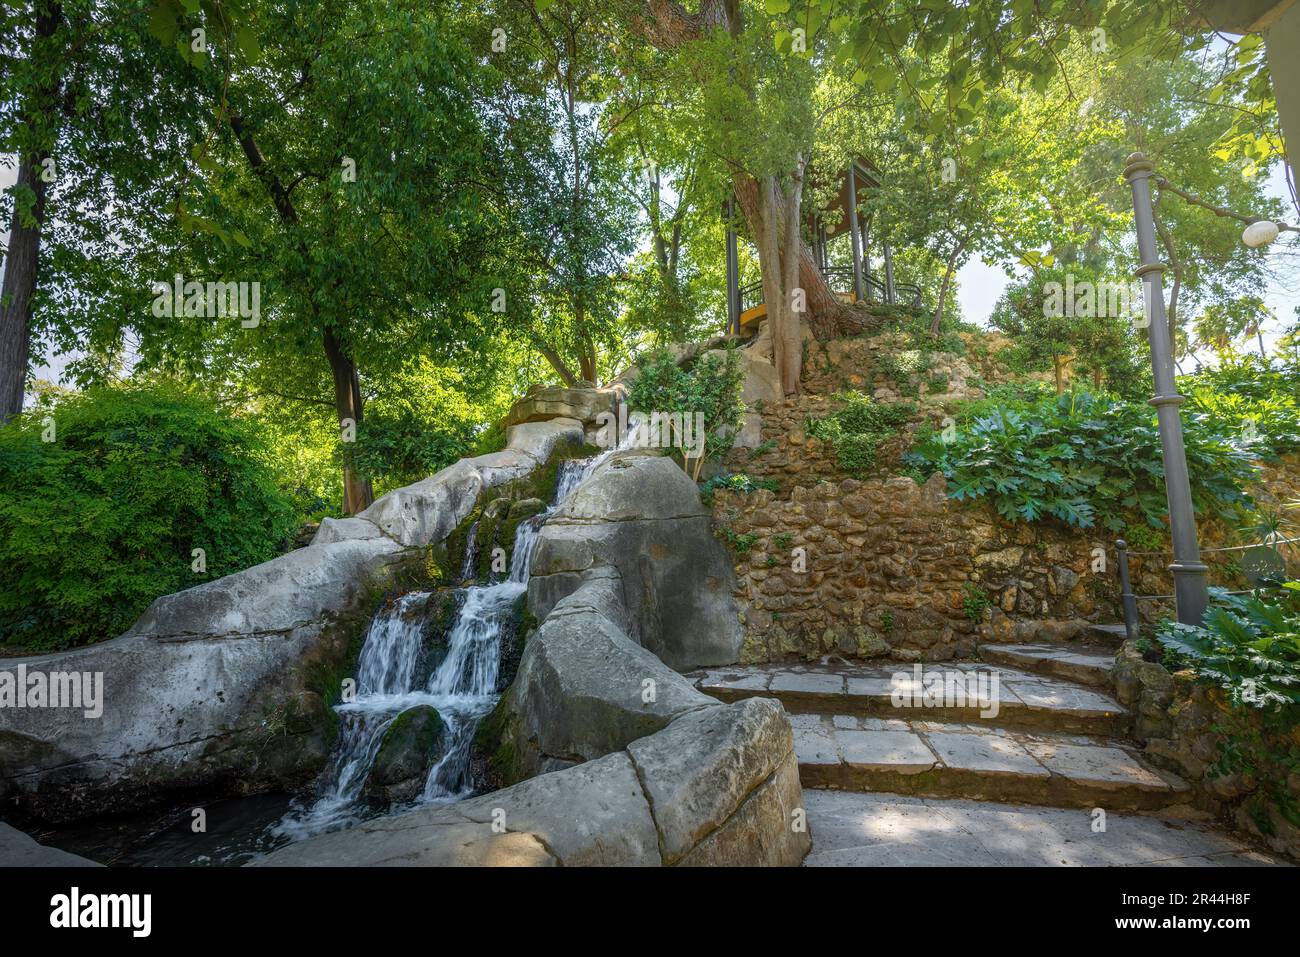 Der Wasserfall des Gurugu Mount im Maria Luisa Park – Sevilla, Andalusien, Spanien Stockfoto